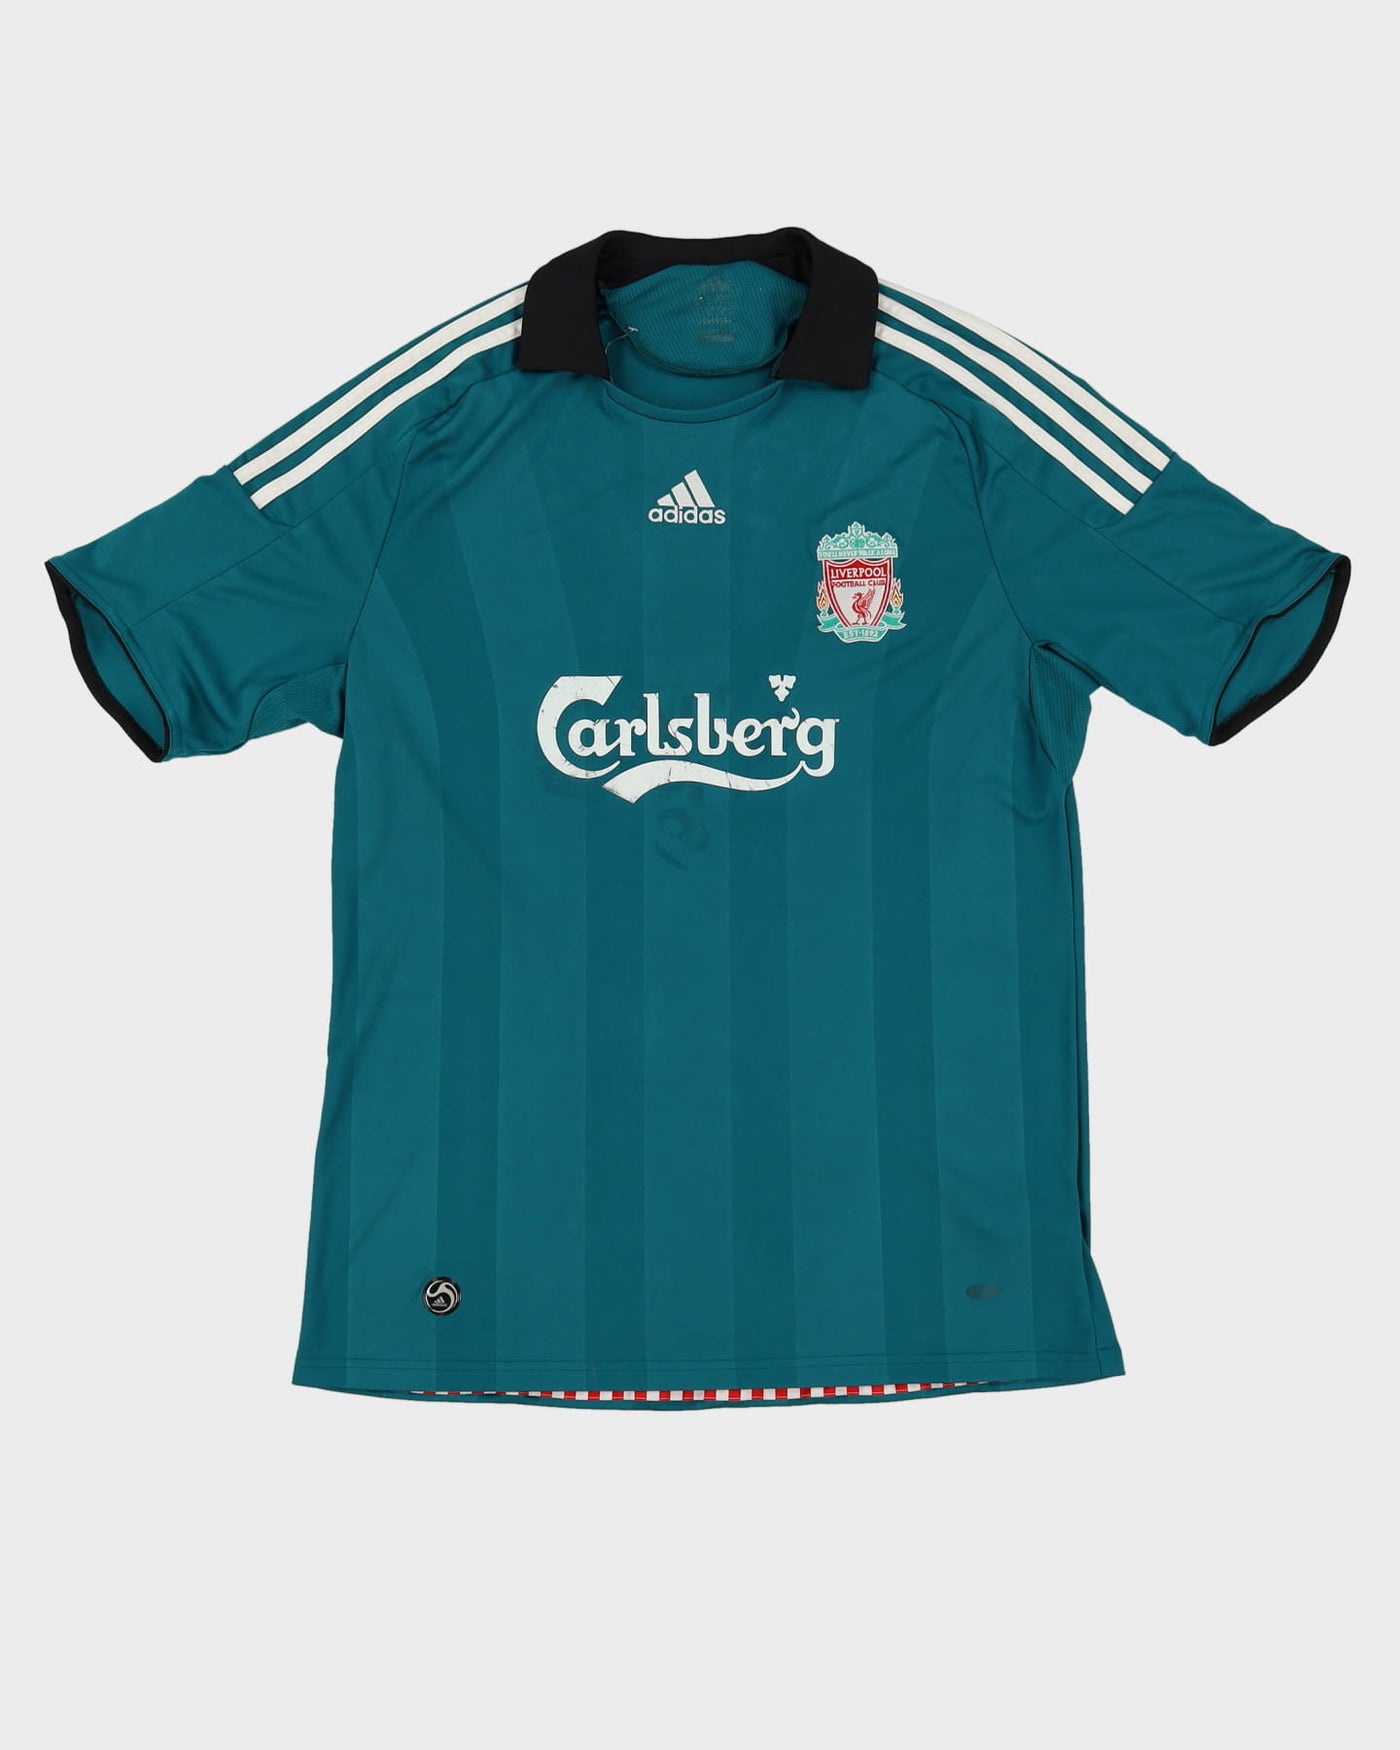 Reebok Liverpool 2008-09 Green Football Shirt / Jersey - L